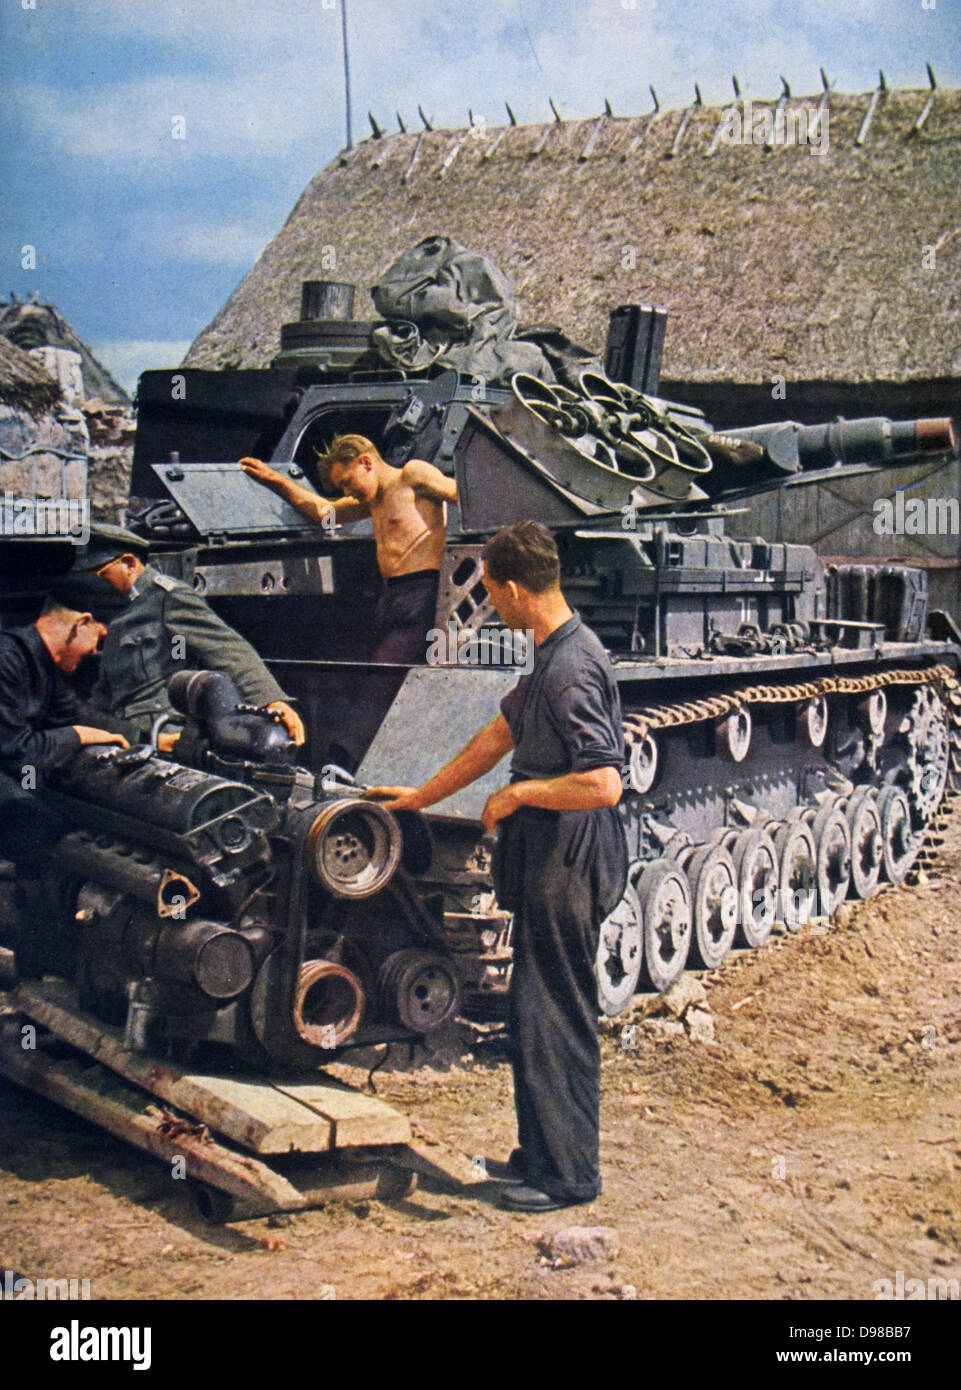 La Deuxième Guerre mondiale, 1939-1945 : armée allemande mécaniciens travaillant sur un réservoir. À partir de 'Signal', avril 1943, revue de propagande allemande produite par la Wehrmacht. Guerre, militaire, mécanisée Banque D'Images